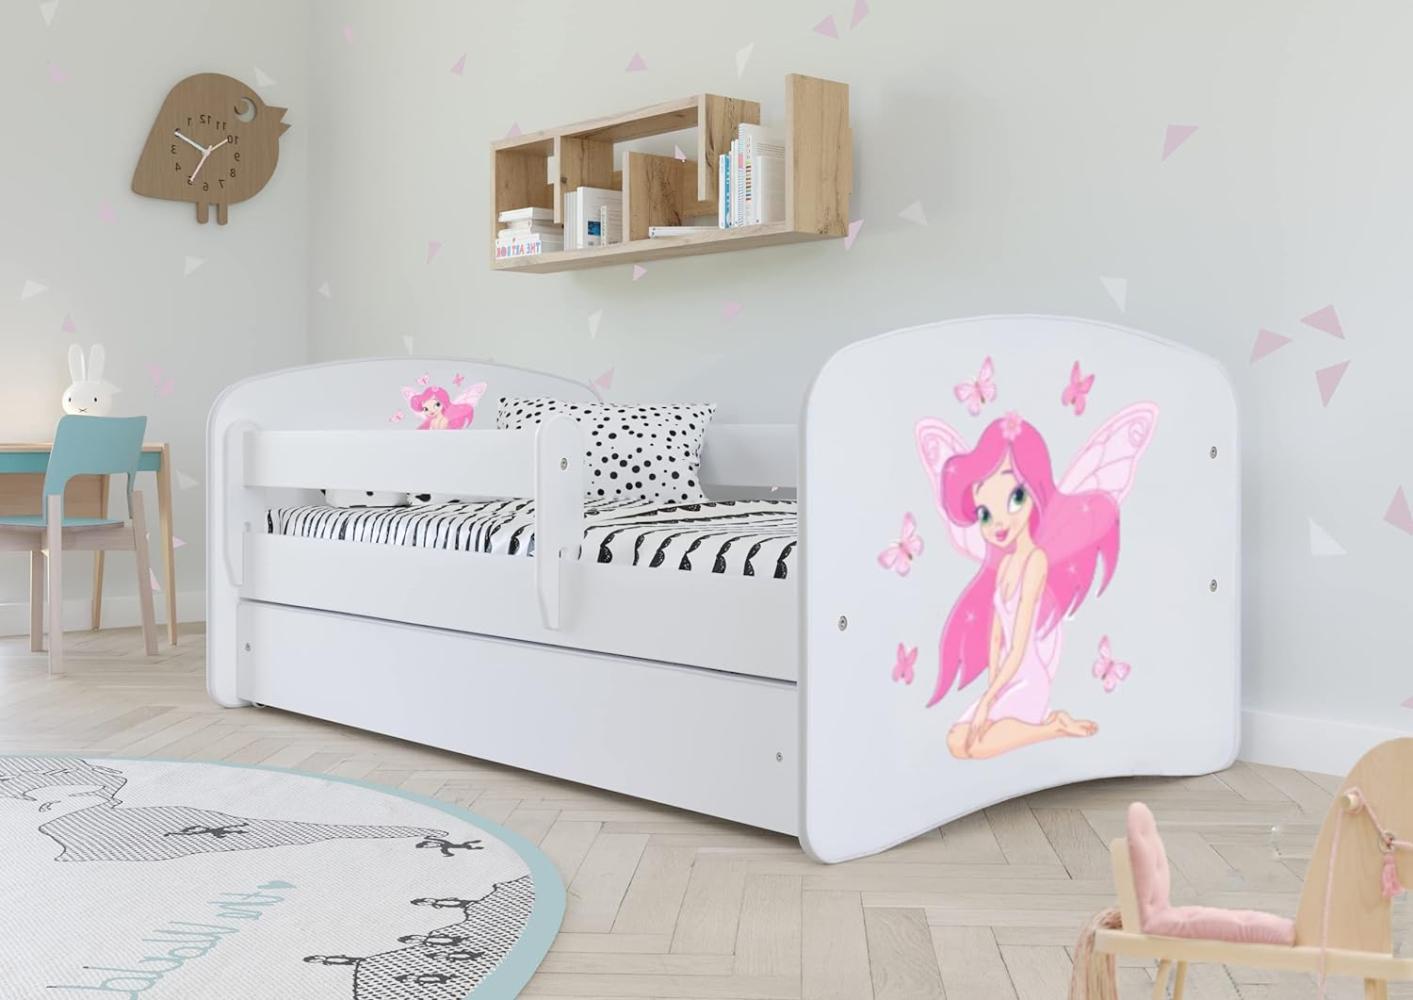 Kocot Kids 'Fee mit Schmetterlingen' Einzelbett weiß 70x140 cm inkl. Rausfallschutz, Matratze, Schublade und Lattenrost Bild 1